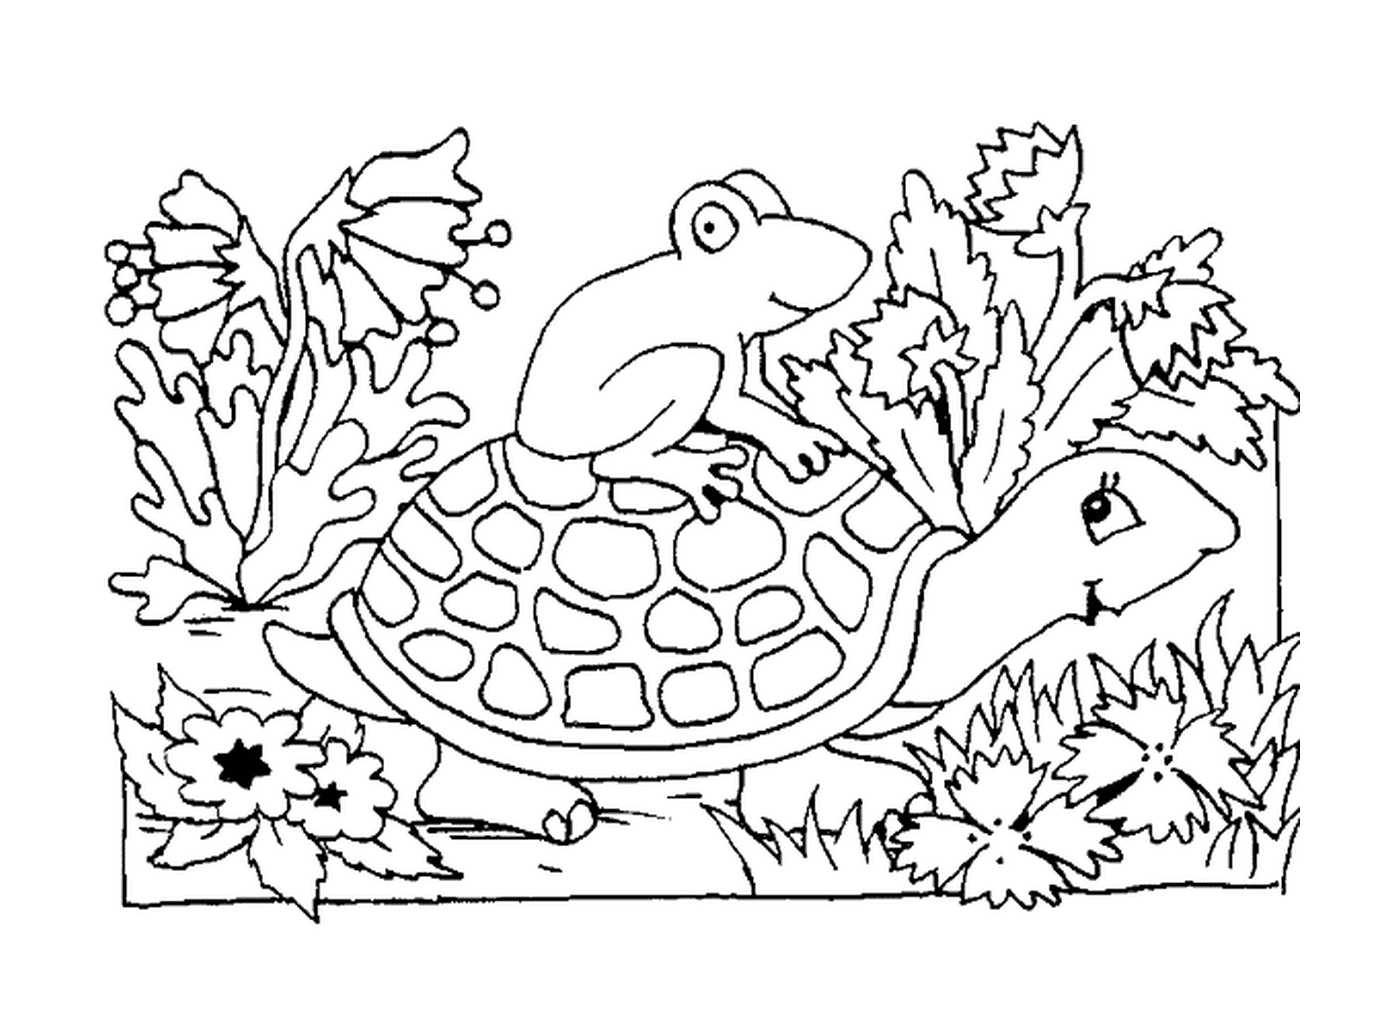  Лягушонок на раковине черепахи 